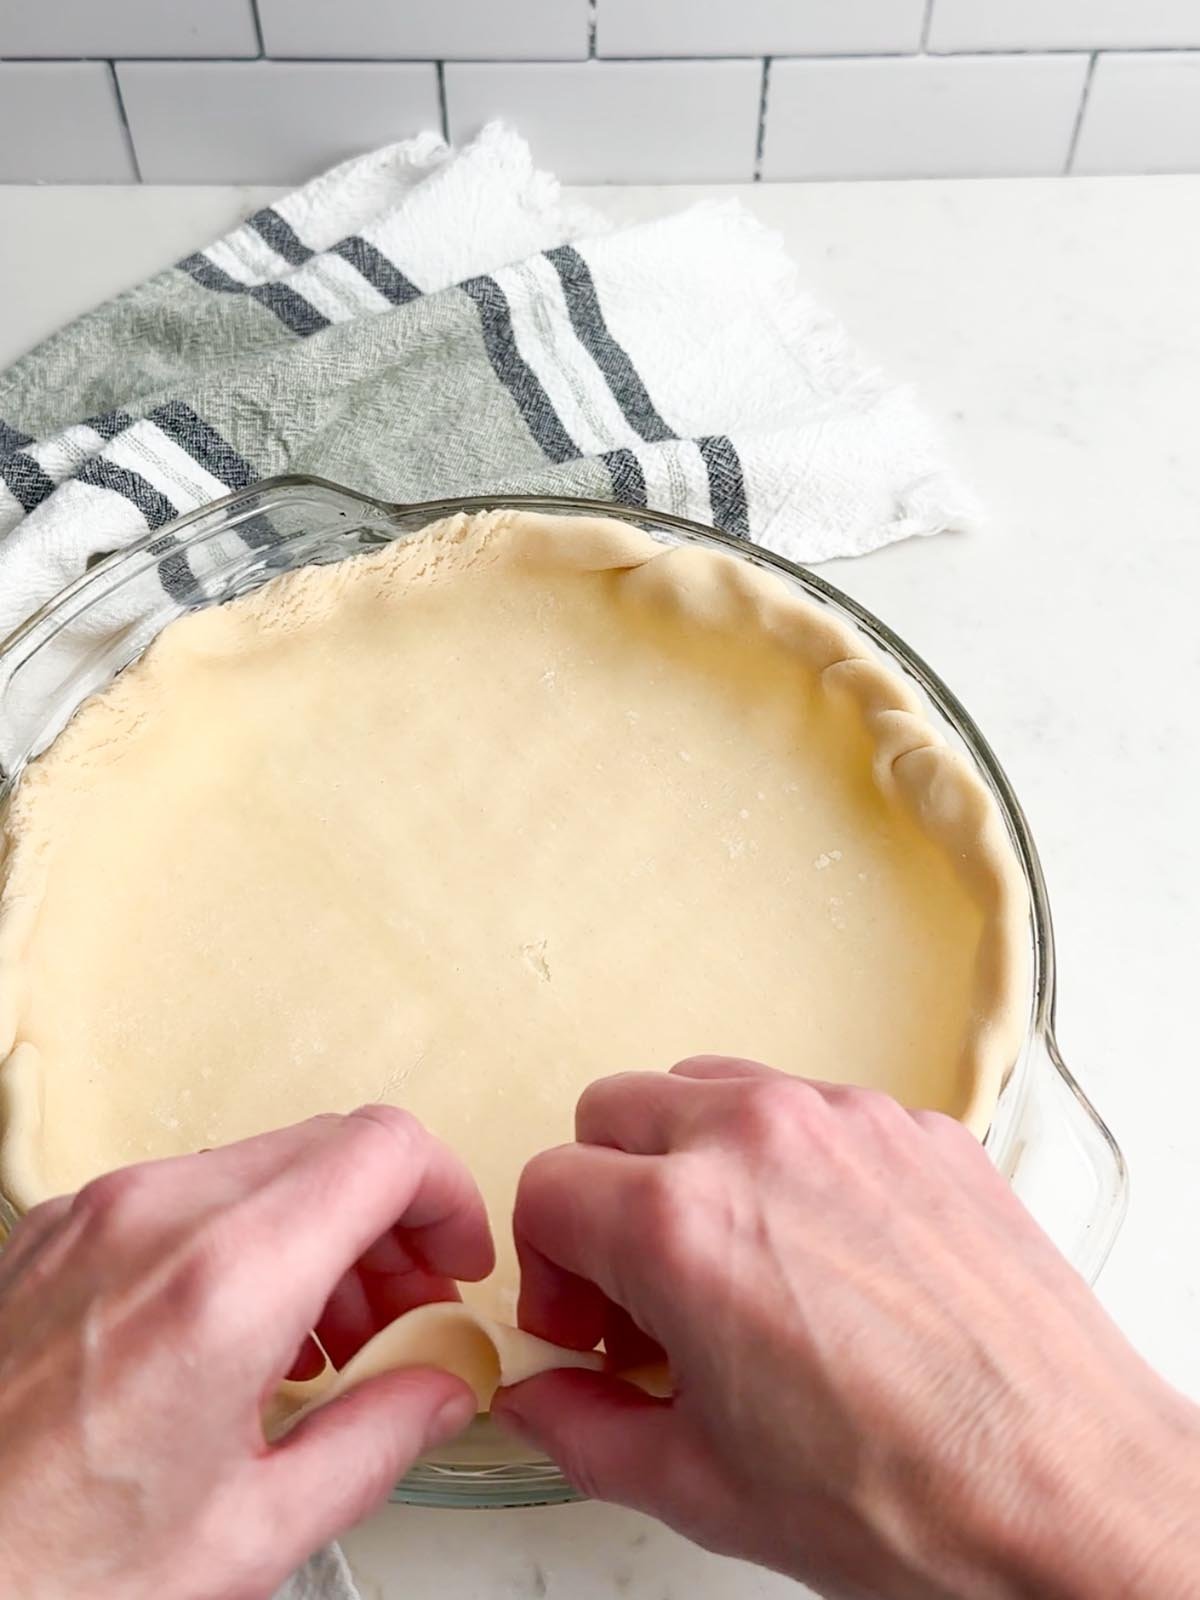 hands pressing pie dough into pie plate.